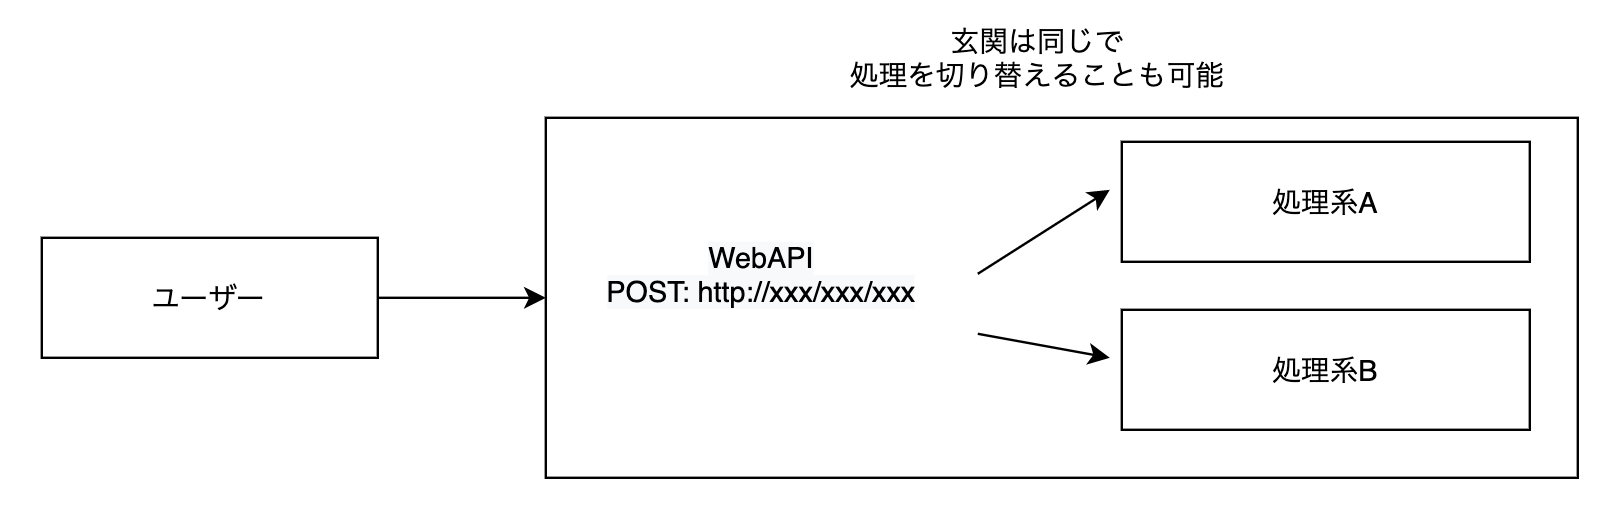 WebAPI設計 - diagrams.net 2020-12-07 02-48-21.png